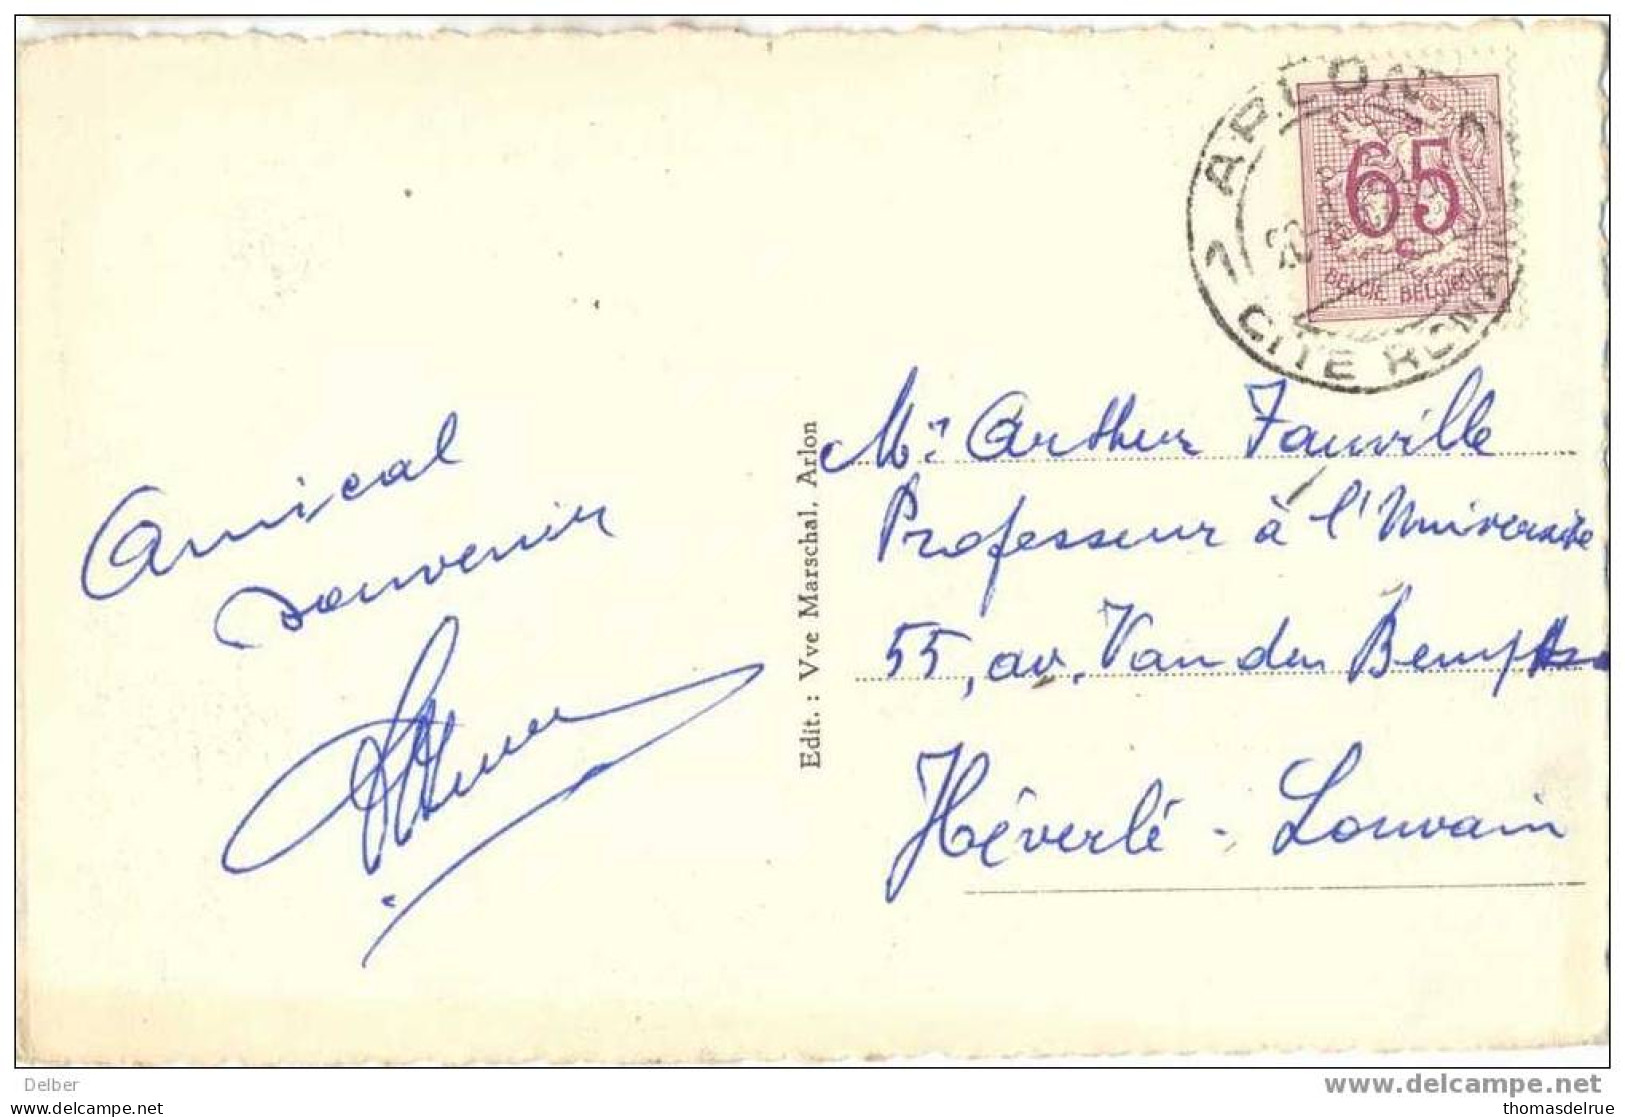 _P99: Postkaart: ARLON L'Eglise Saint-Donat Et Les Charmilles..met N° 856: 1 ARLON 1 CITE ROMAINE 20.8.52 - 1977-1985 Zahl Auf Löwe (Chiffre Sur Lion)